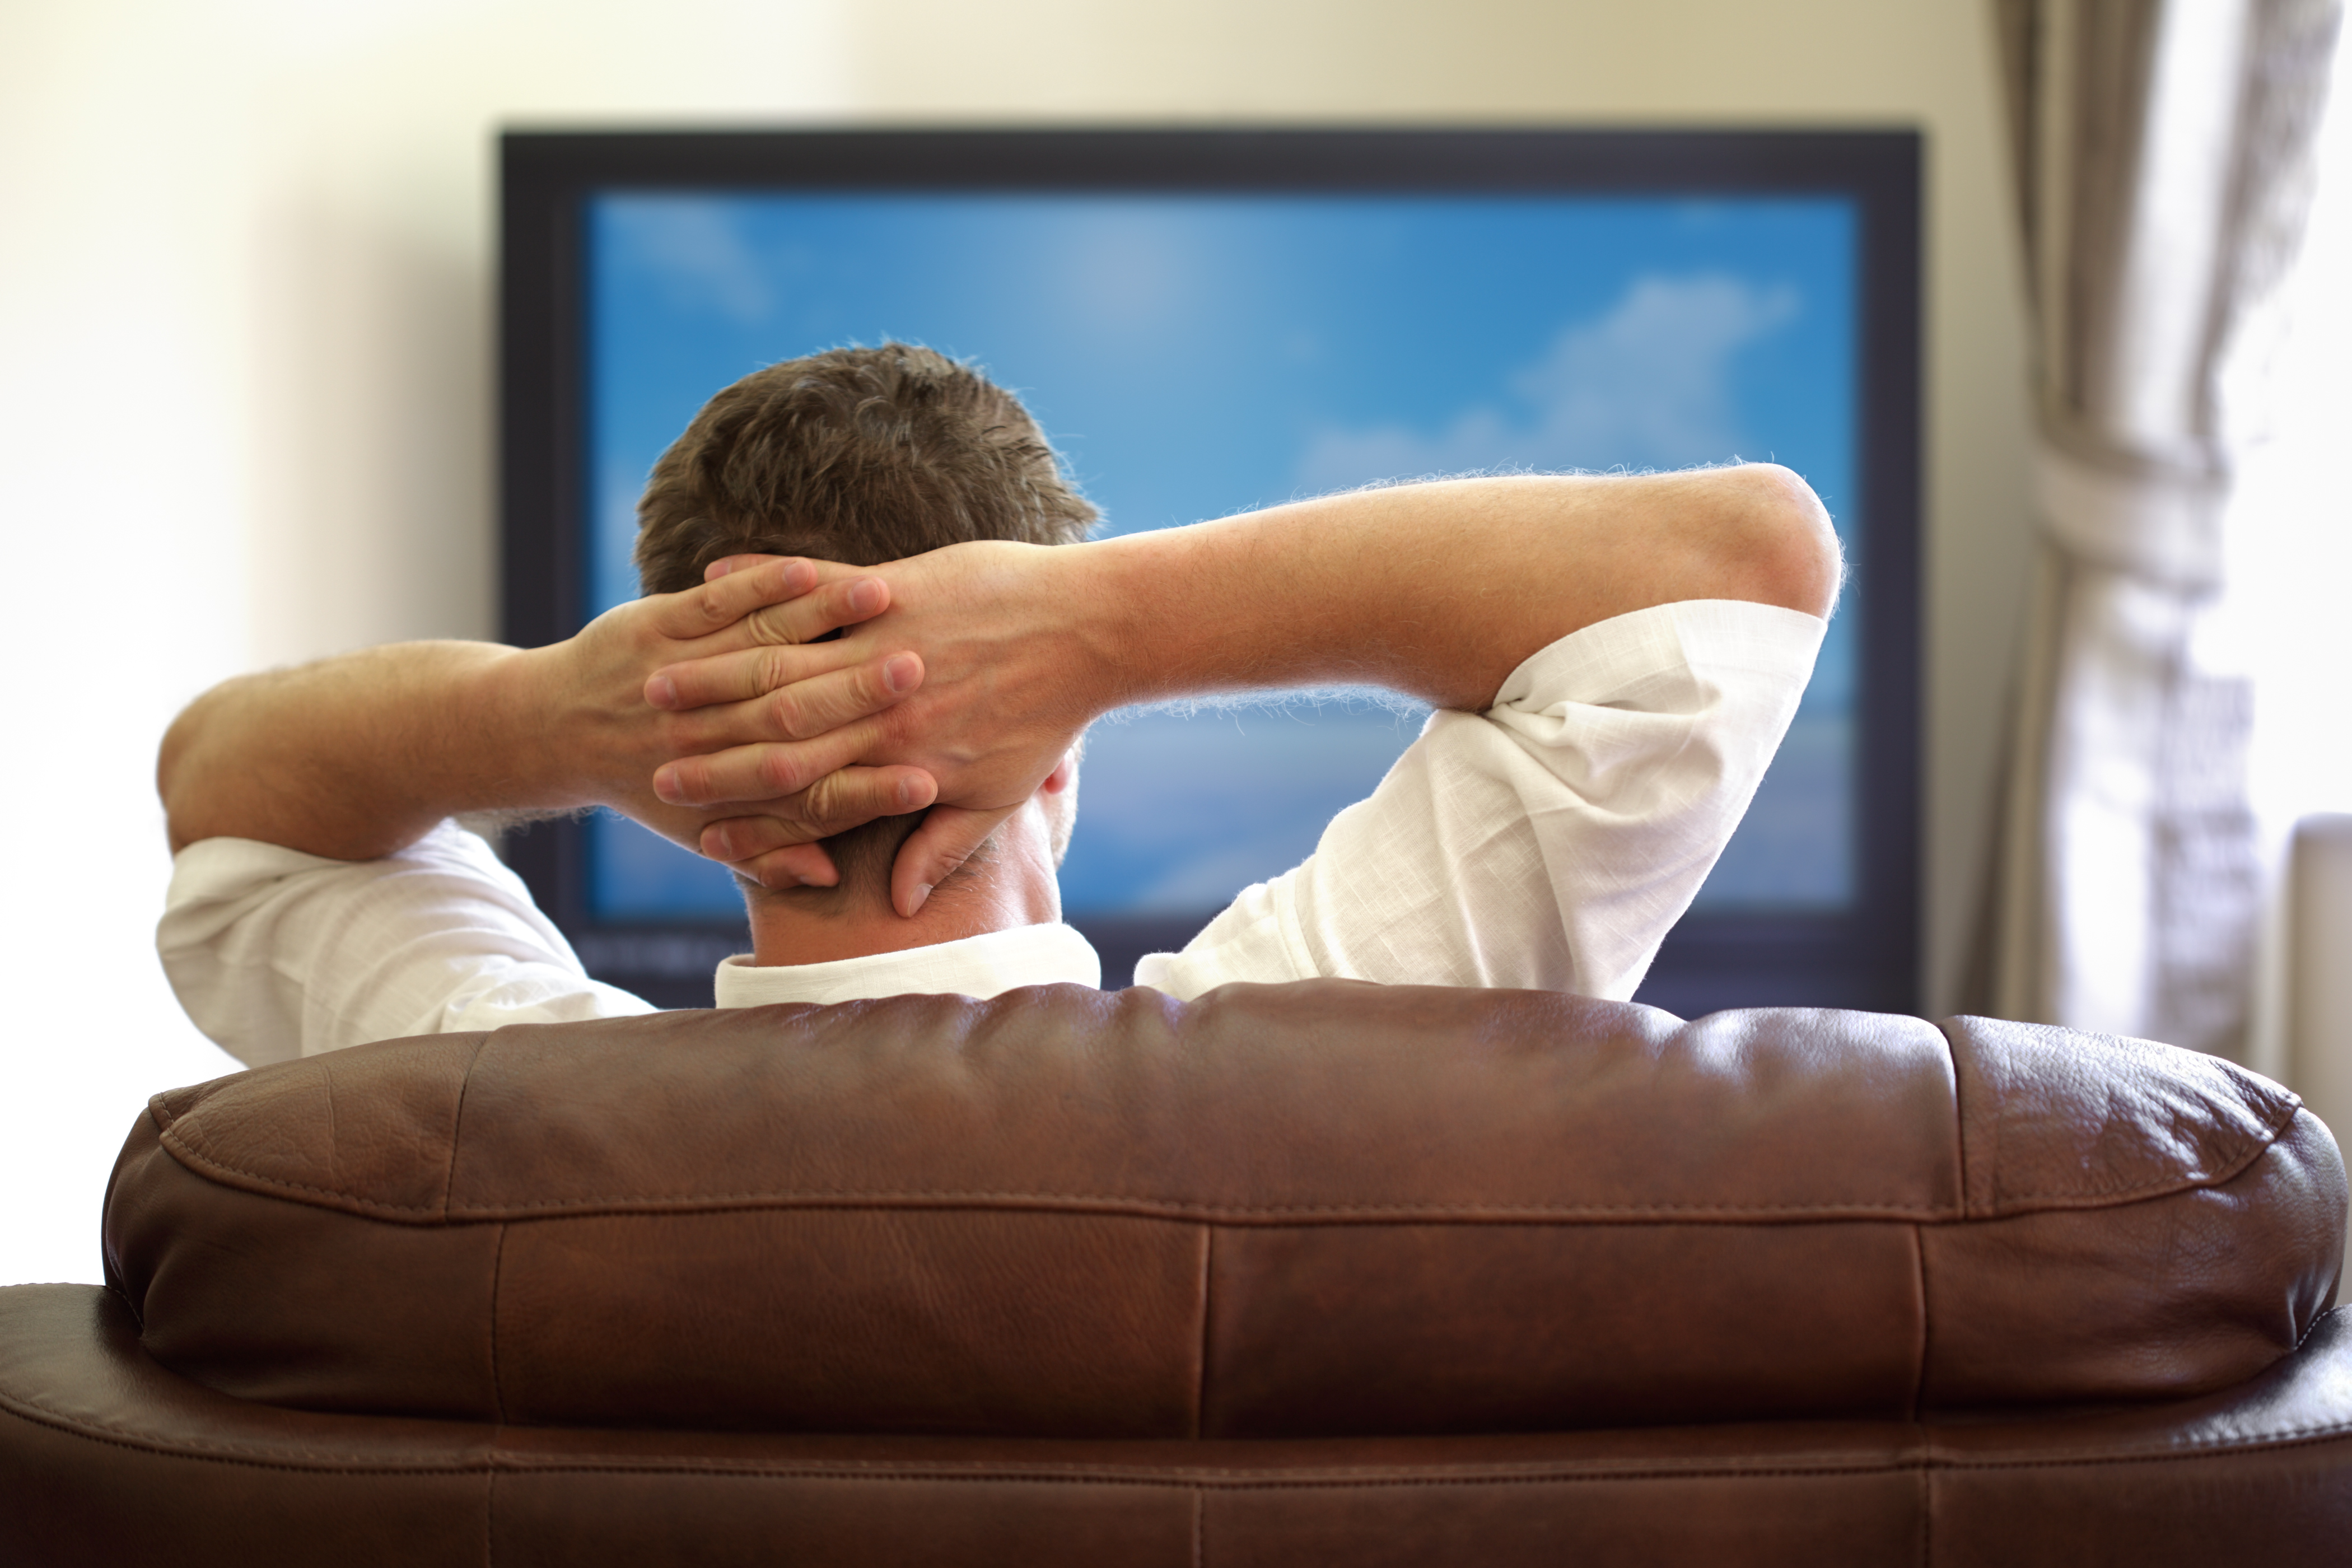 A man watching TV | Source: Shutterstock